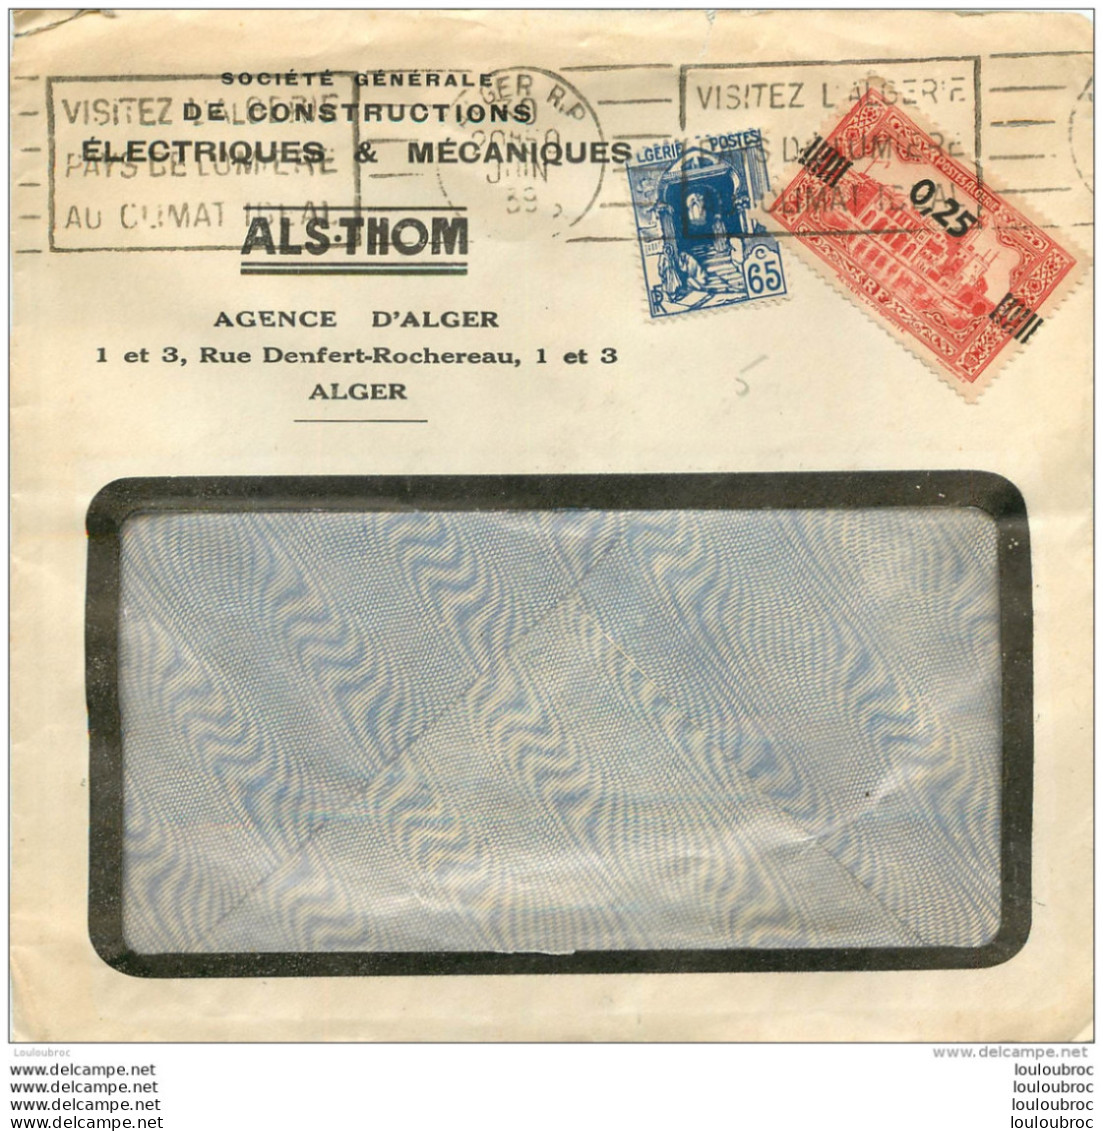 ENVELOPPE  1939 ALS.THOM AGENCE D'ALGER - Used Stamps